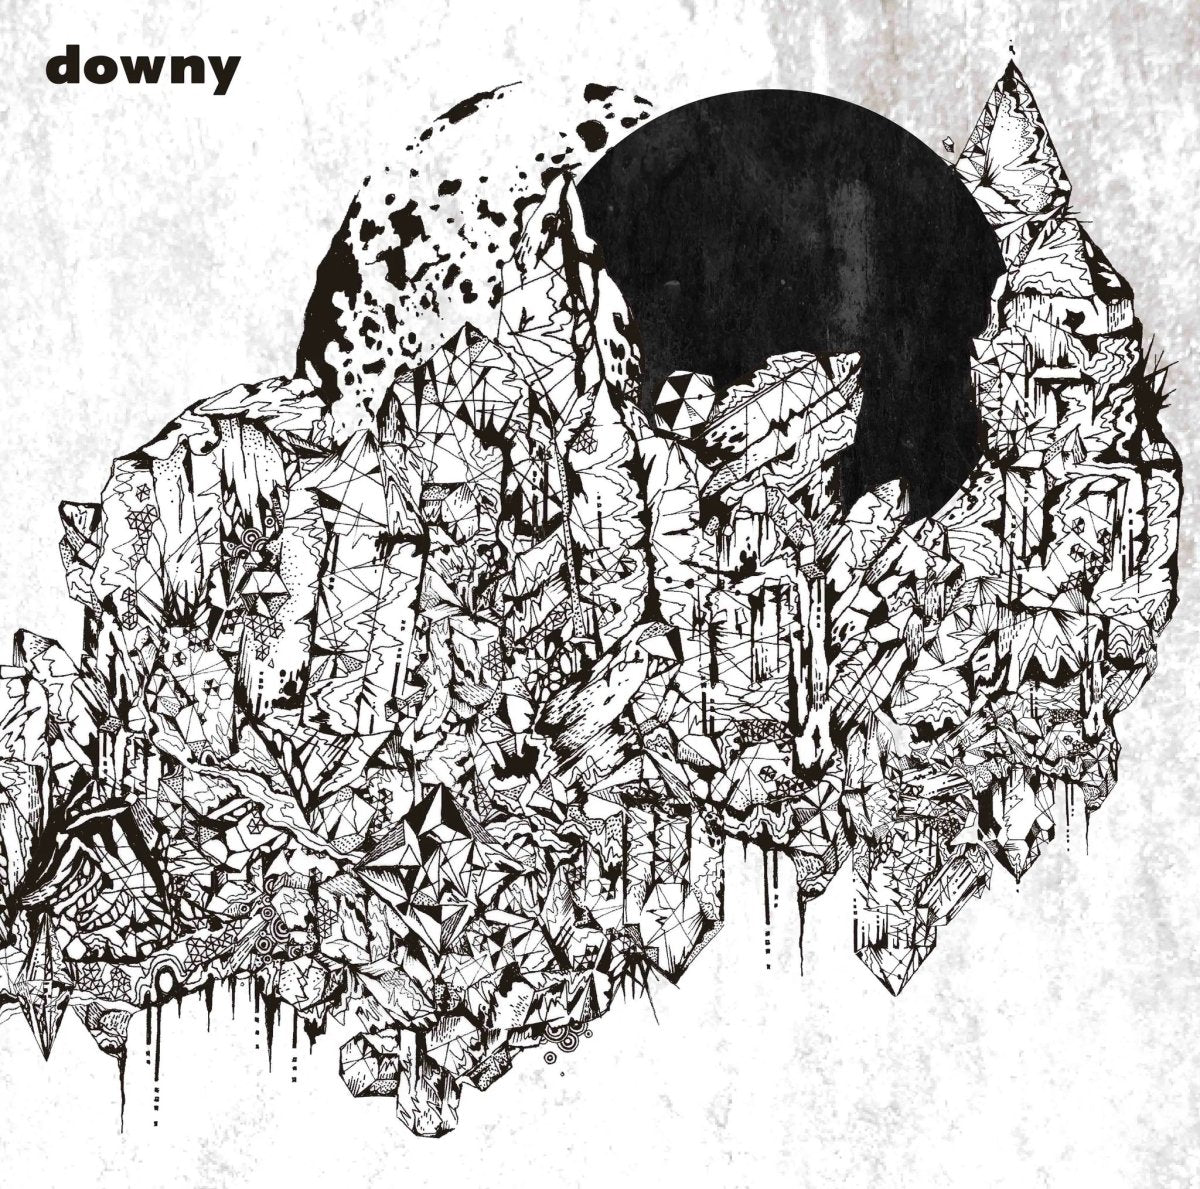 downy - untitled 5 [Vinyl]